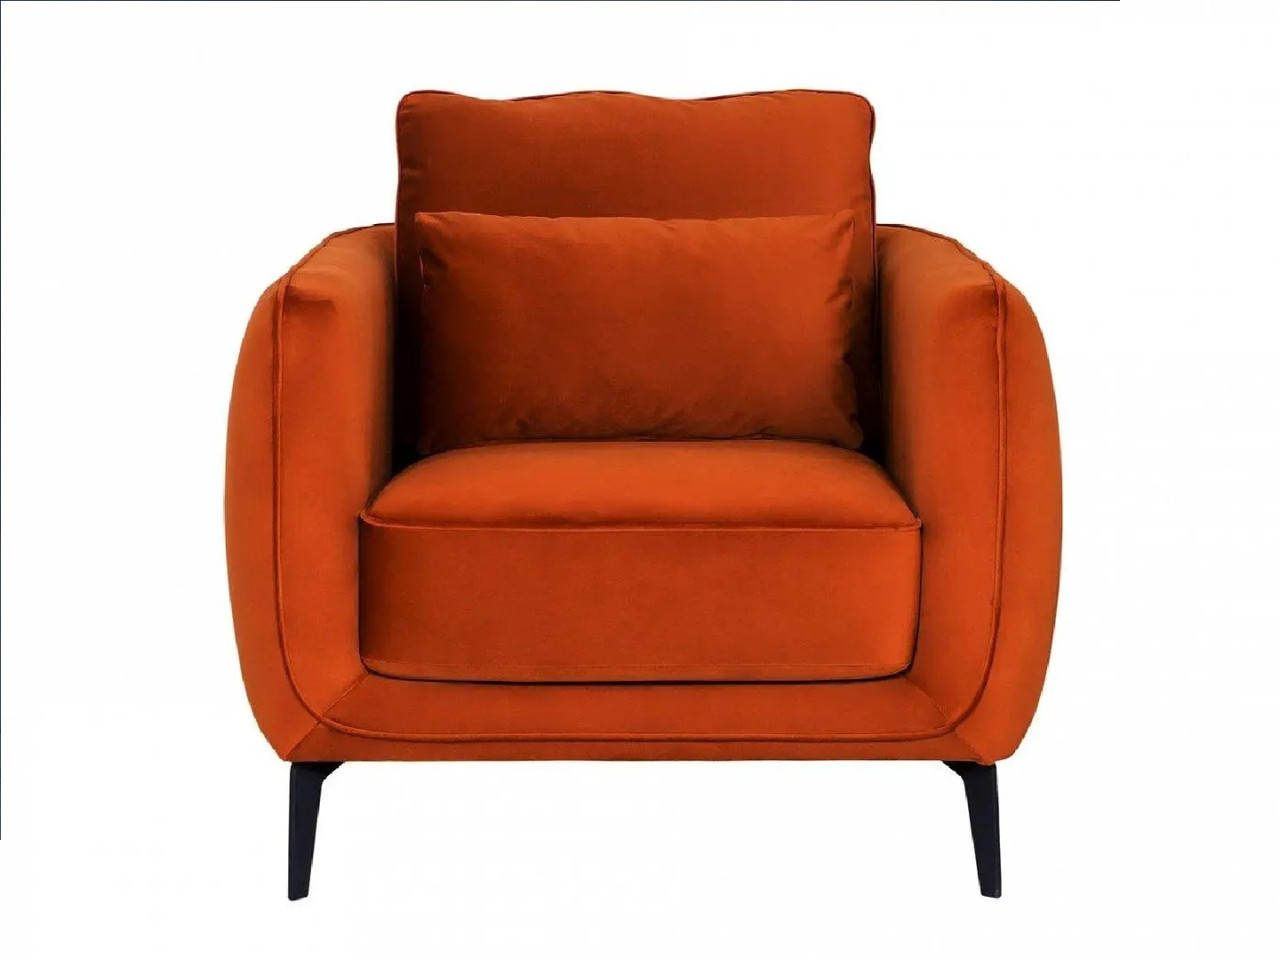 Hoffmann классическое кресло, обивка вельвет Amsterdam orange